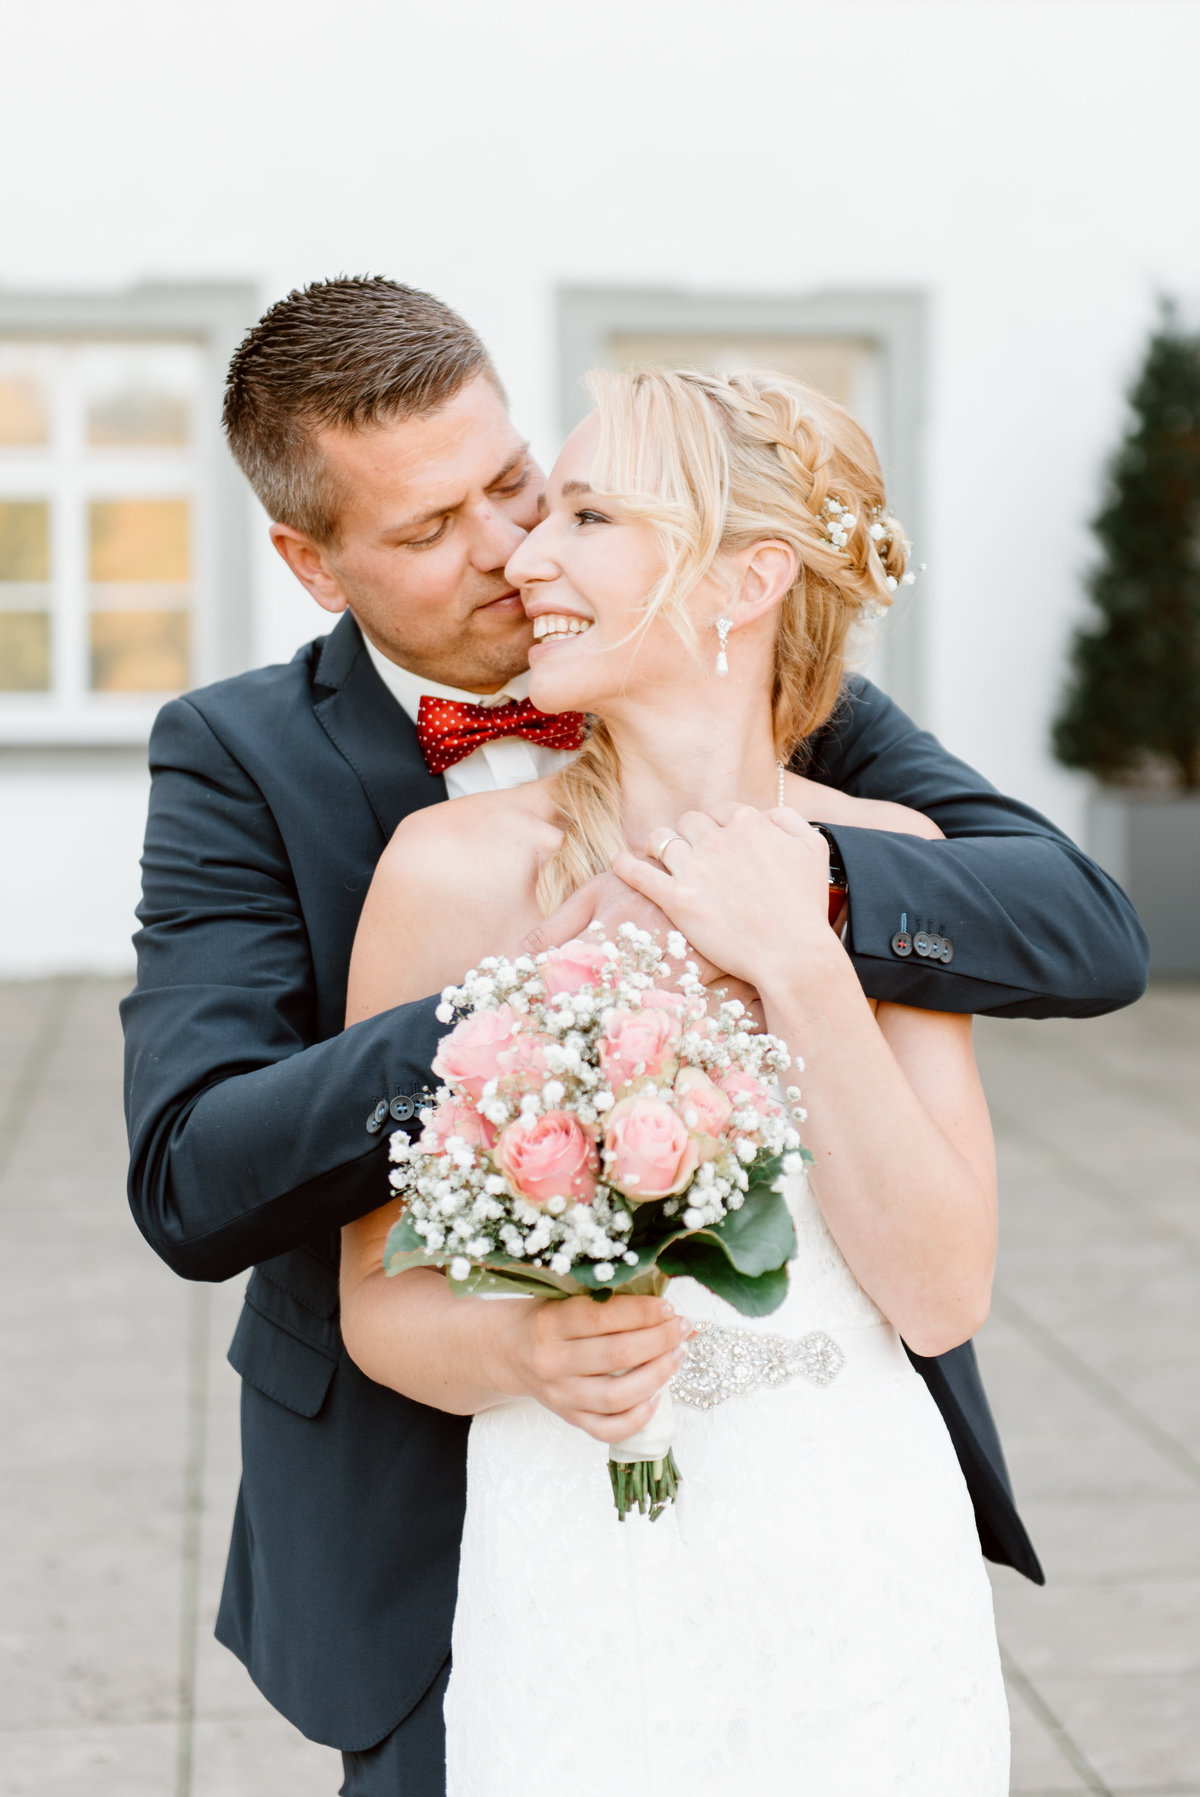 Leonie Leder | Hochzeitsfotografin aus Leidenschaft | Hochzeitsportraits - Hochzeitsreportage - Engagement - Verlobung - After Wedding | Augsburg Ulm Bayern Allgäu München